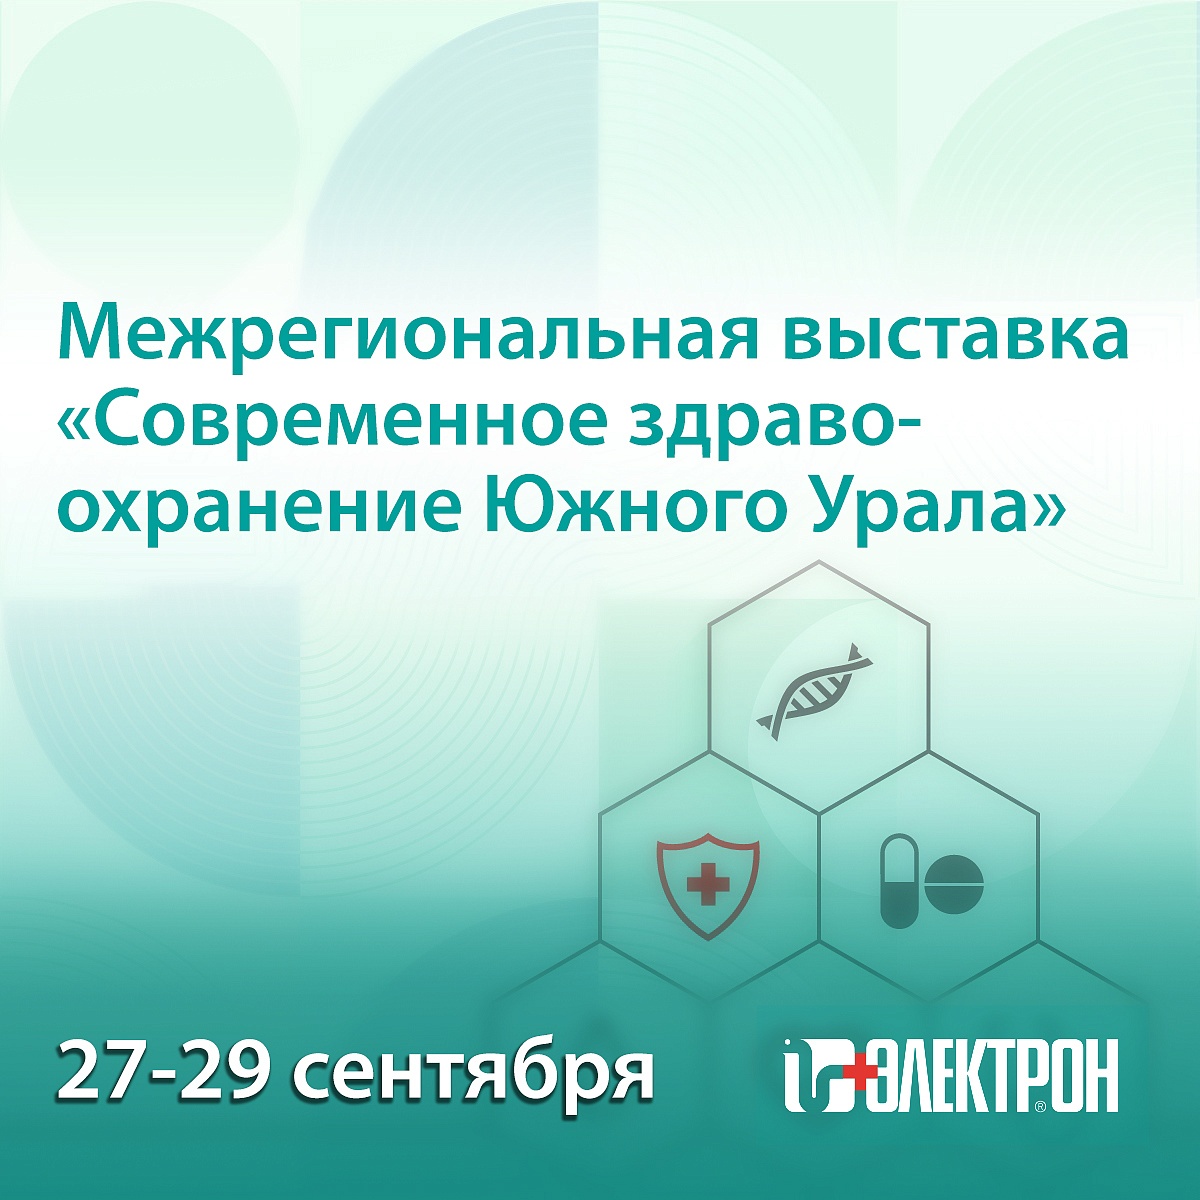 Приглашаем на выставку «Современное здравоохранение Южного Урала» в Челябинске